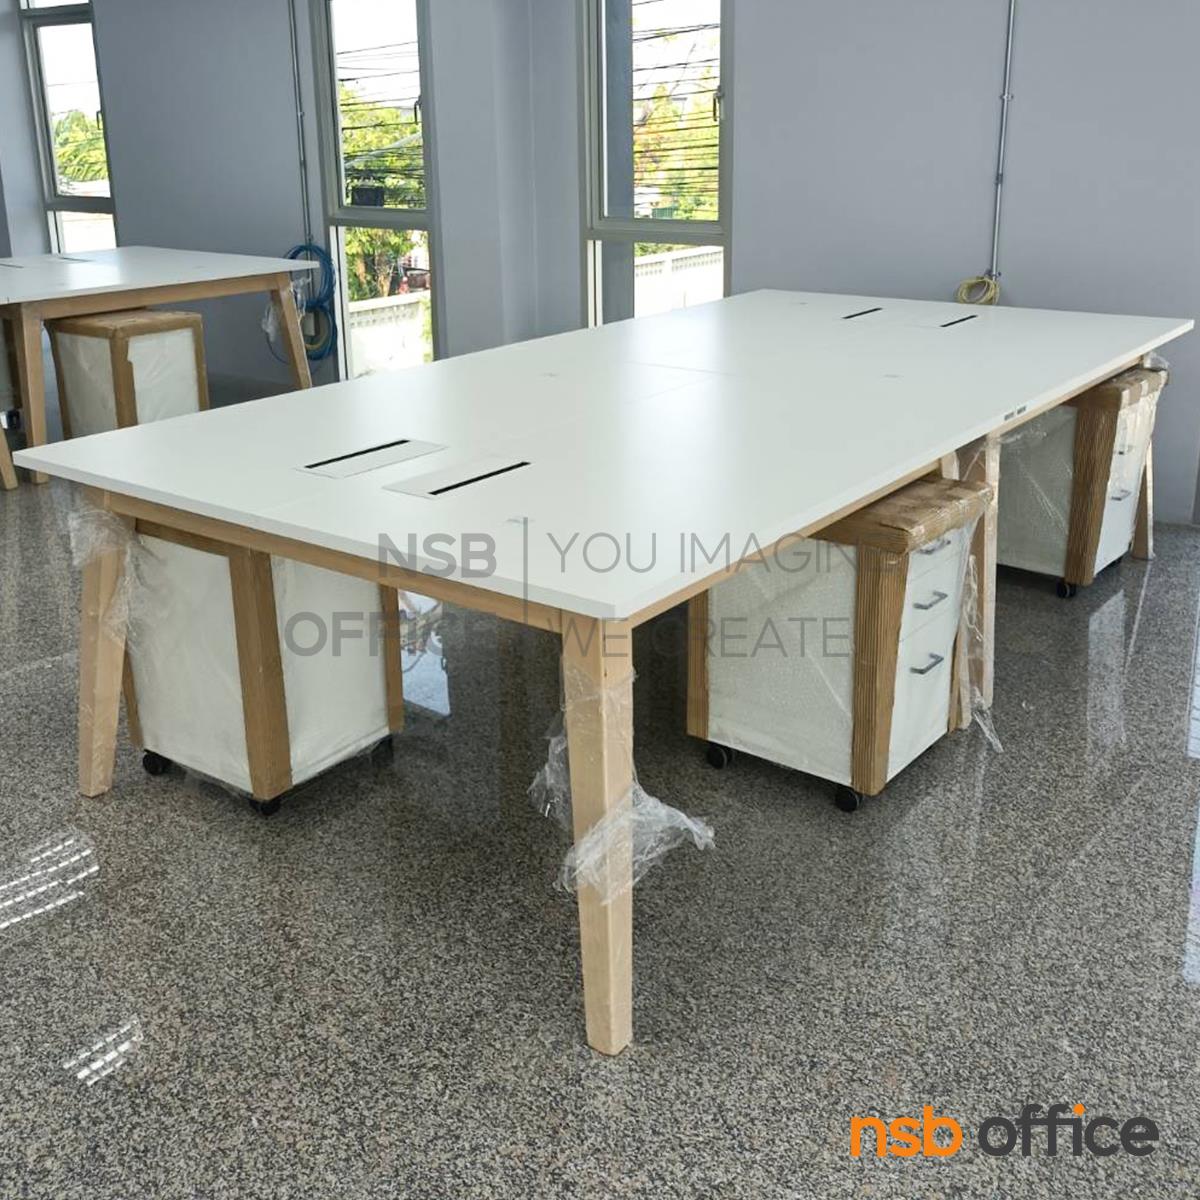 โต๊ะประชุมทรงสี่เหลี่ยม  รุ่น Kenya (เคนย่า) ขนาด 180W*120D cm ขาไม้จริง